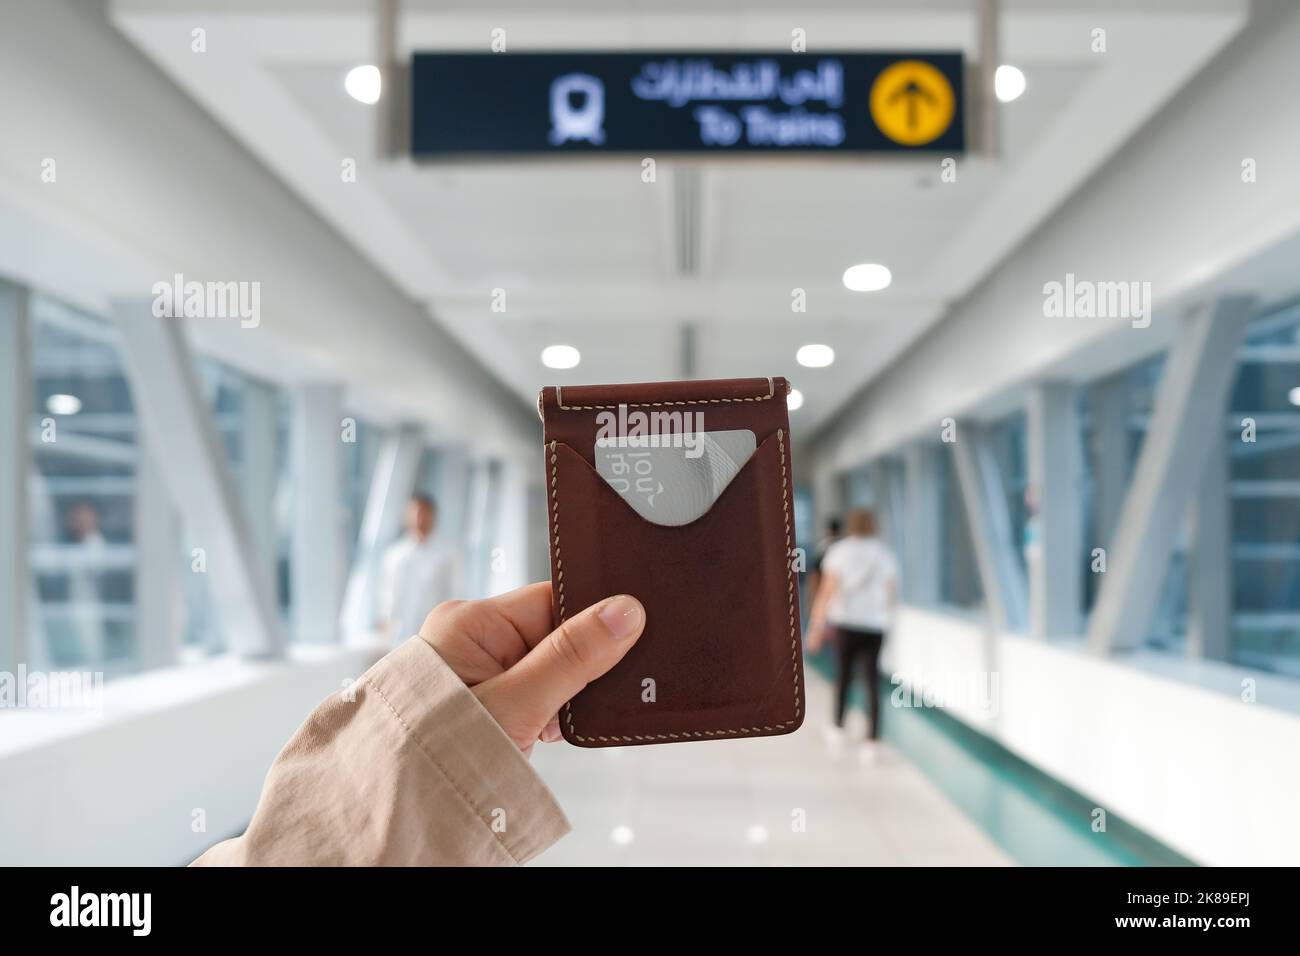 La mano hembra sostiene el portador de la tarjeta de cuero con la tarjeta azul del metro de Dubai de plata en una estación de tren en la ciudad moderna del Oriente Medio. Tarifa electrónica sin contacto. Foto de stock